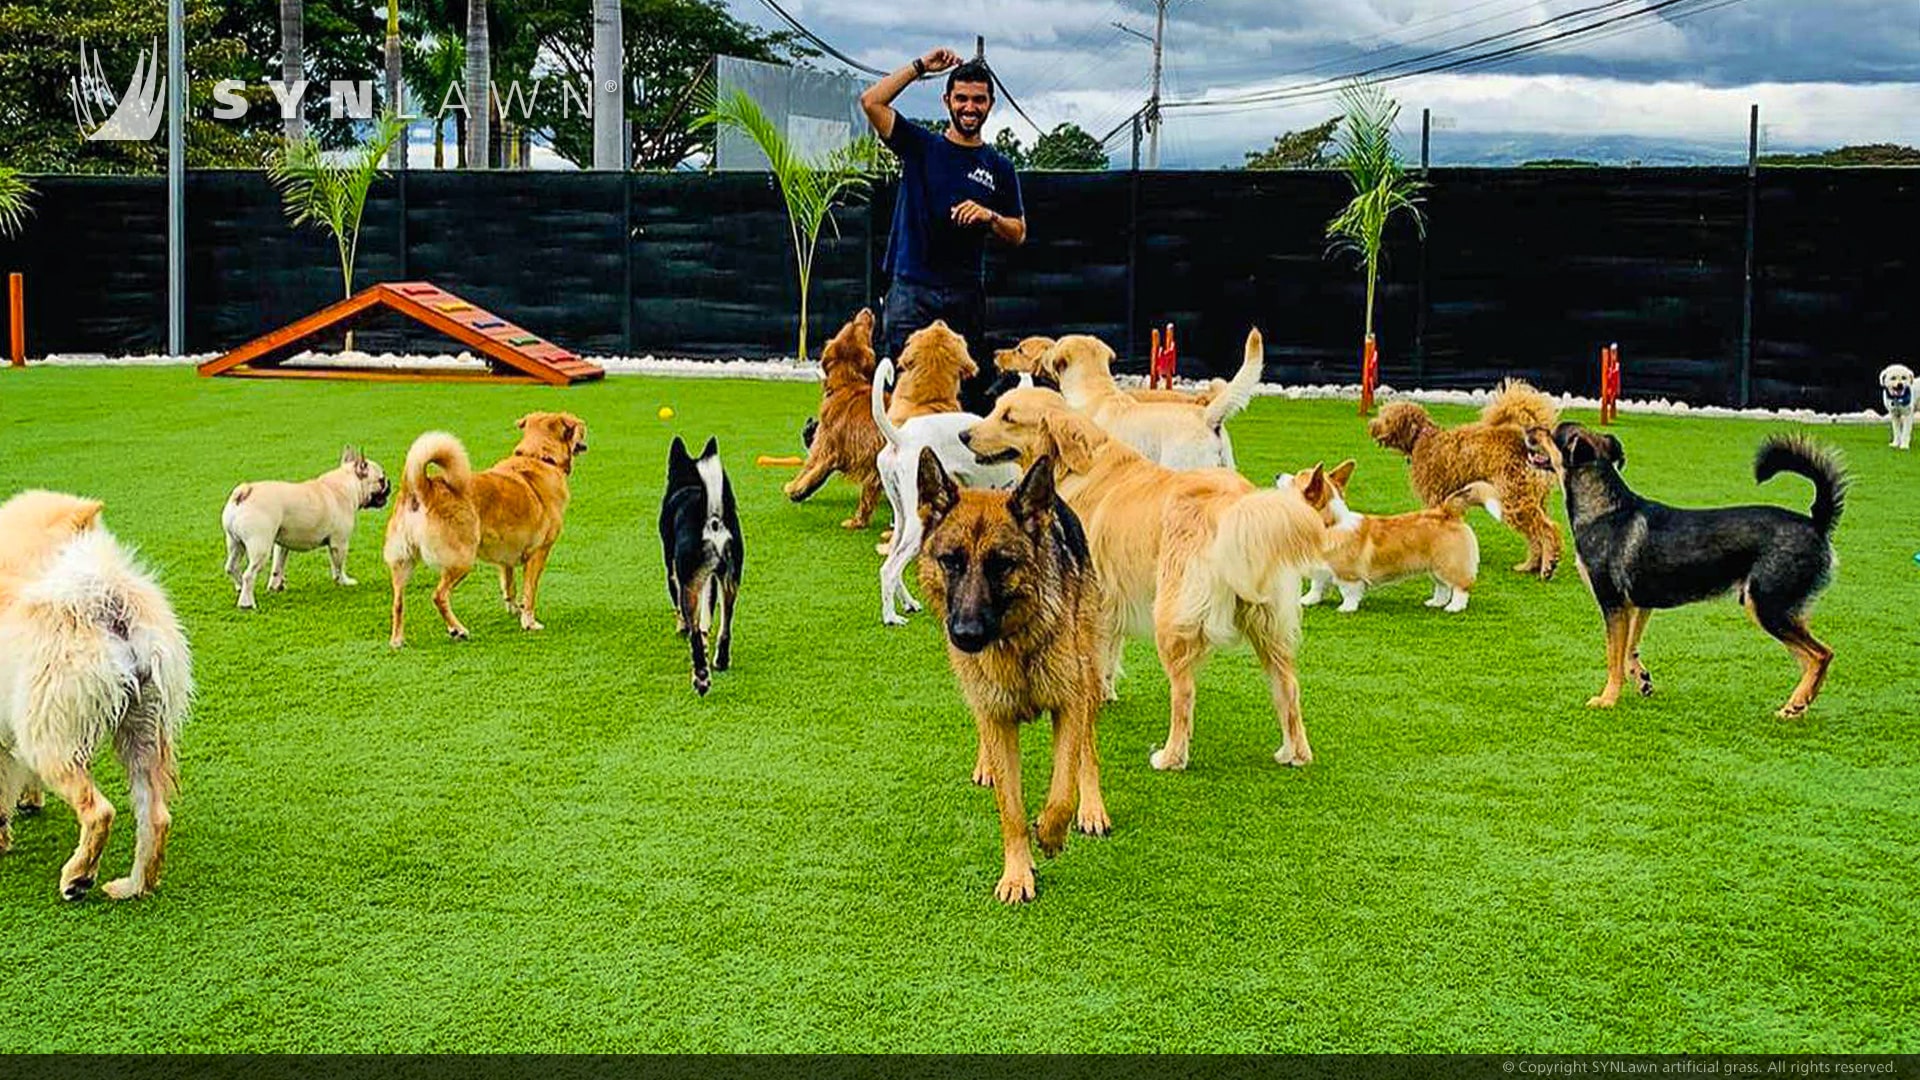 Hotel per animali a cinque stelle e asilo nido in Costa Rica aggiunge un'area giochi per cani